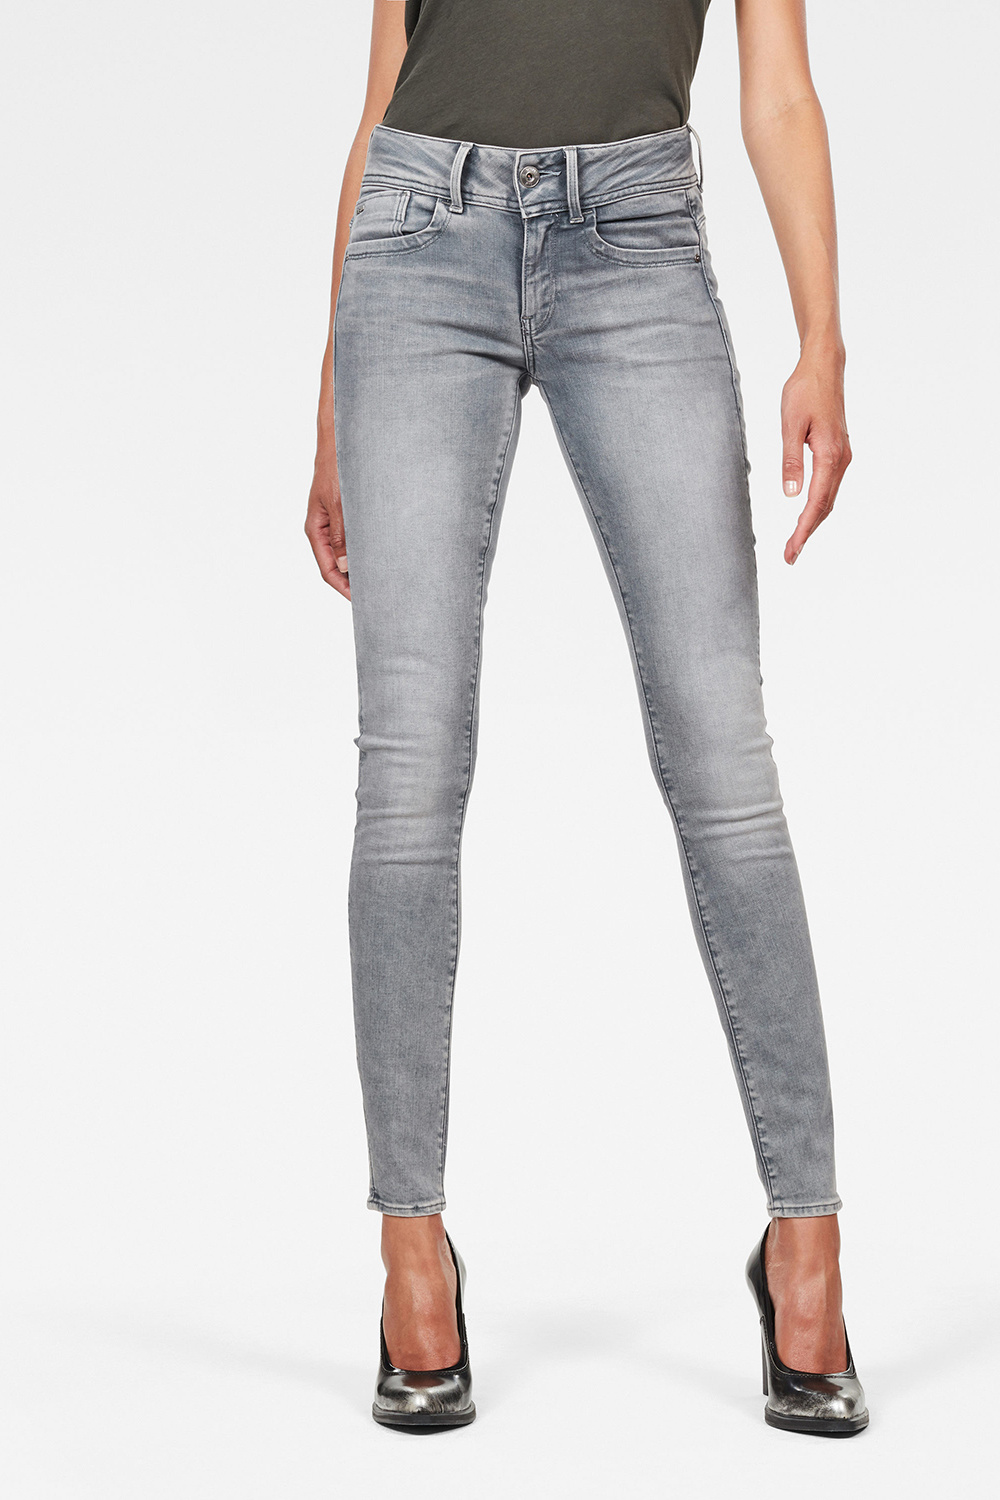 G-star Jeans Lynn Mid Waist Skinny Jeans b336 D06746.9882 - Dames Jeans Webshop. Jeans & Online - Leads &